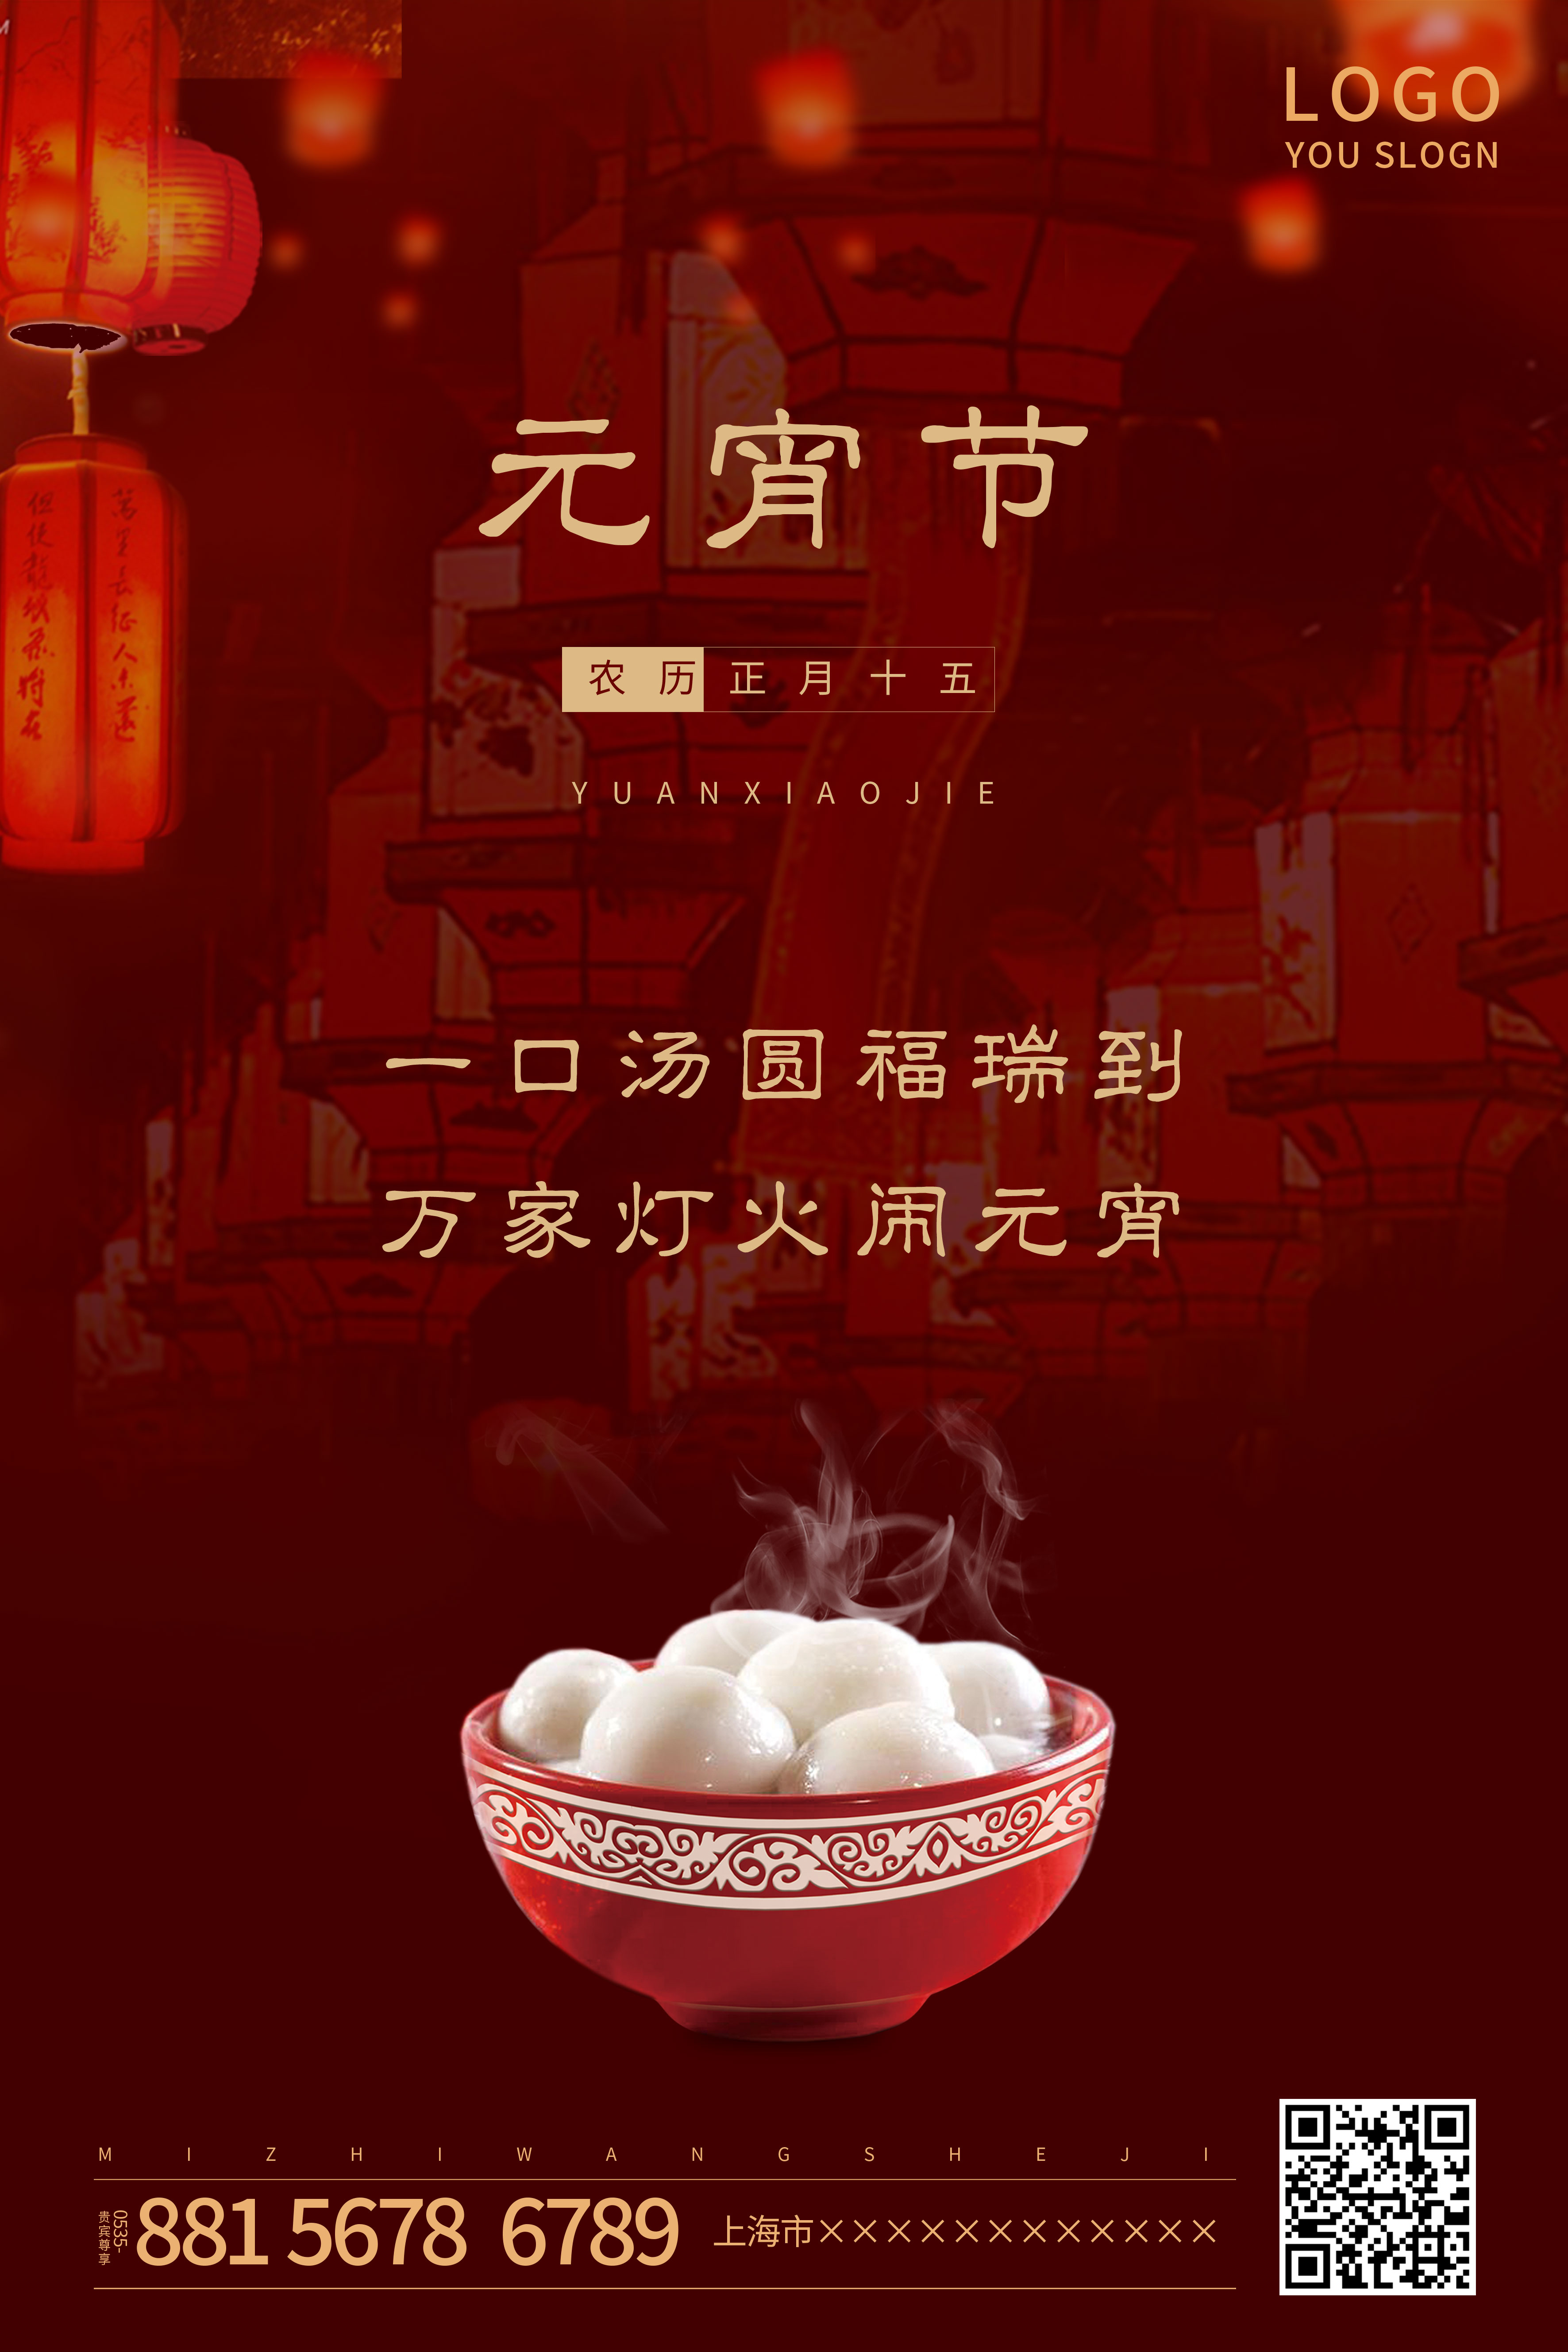 红色喜庆闹元宵传统节日元宵节宣传海报